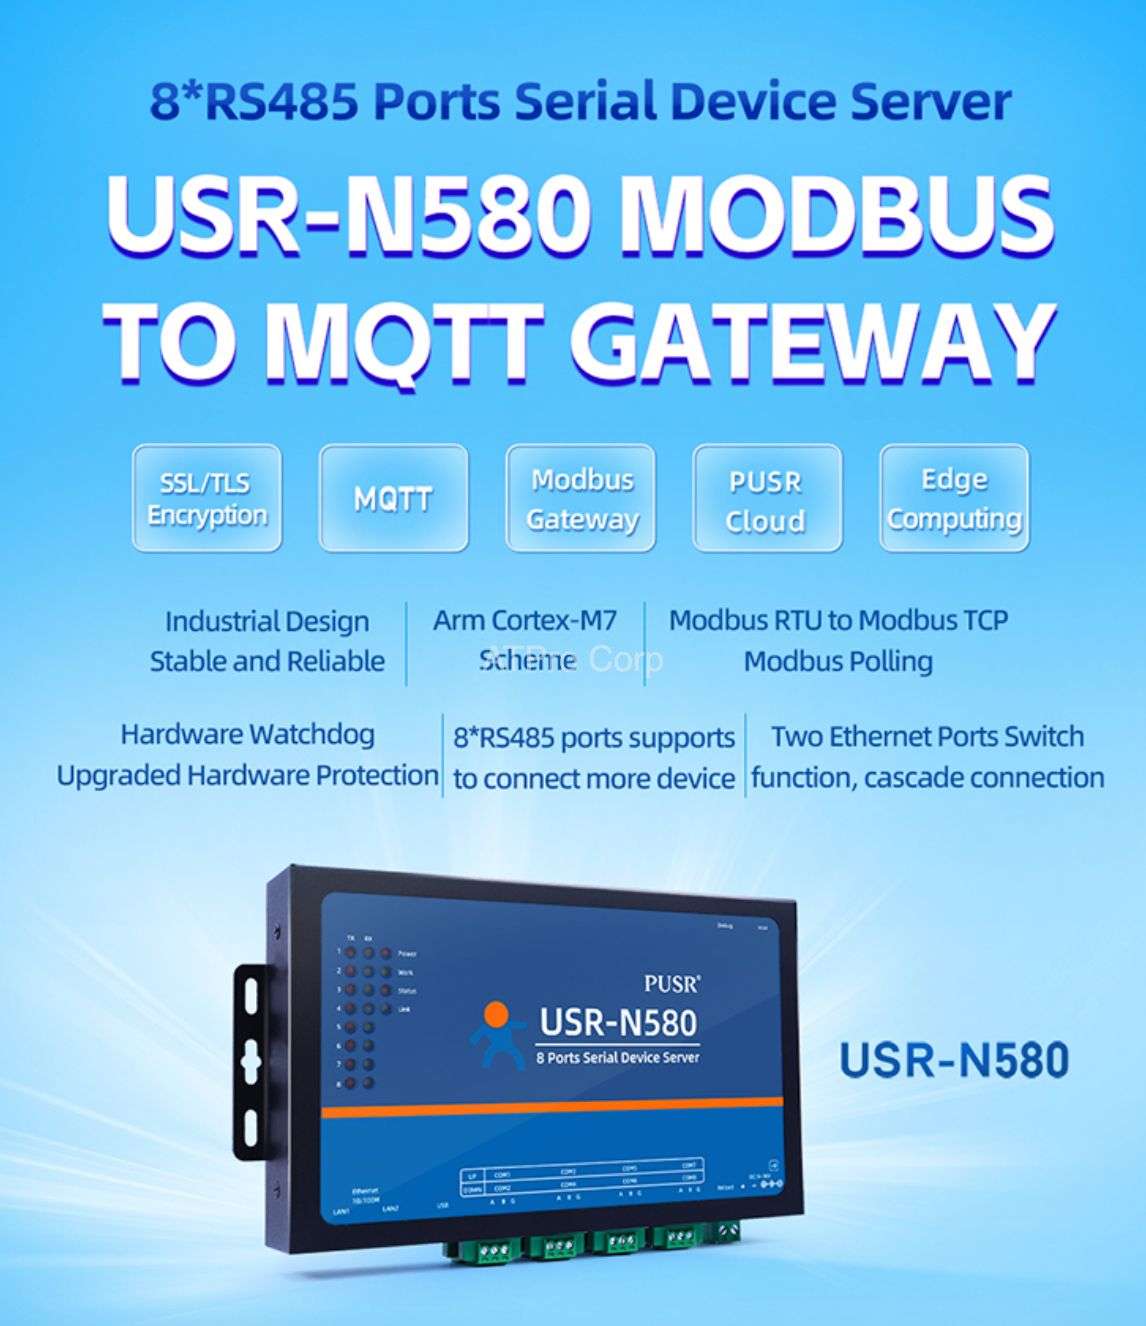 modbus gateway USR-N580